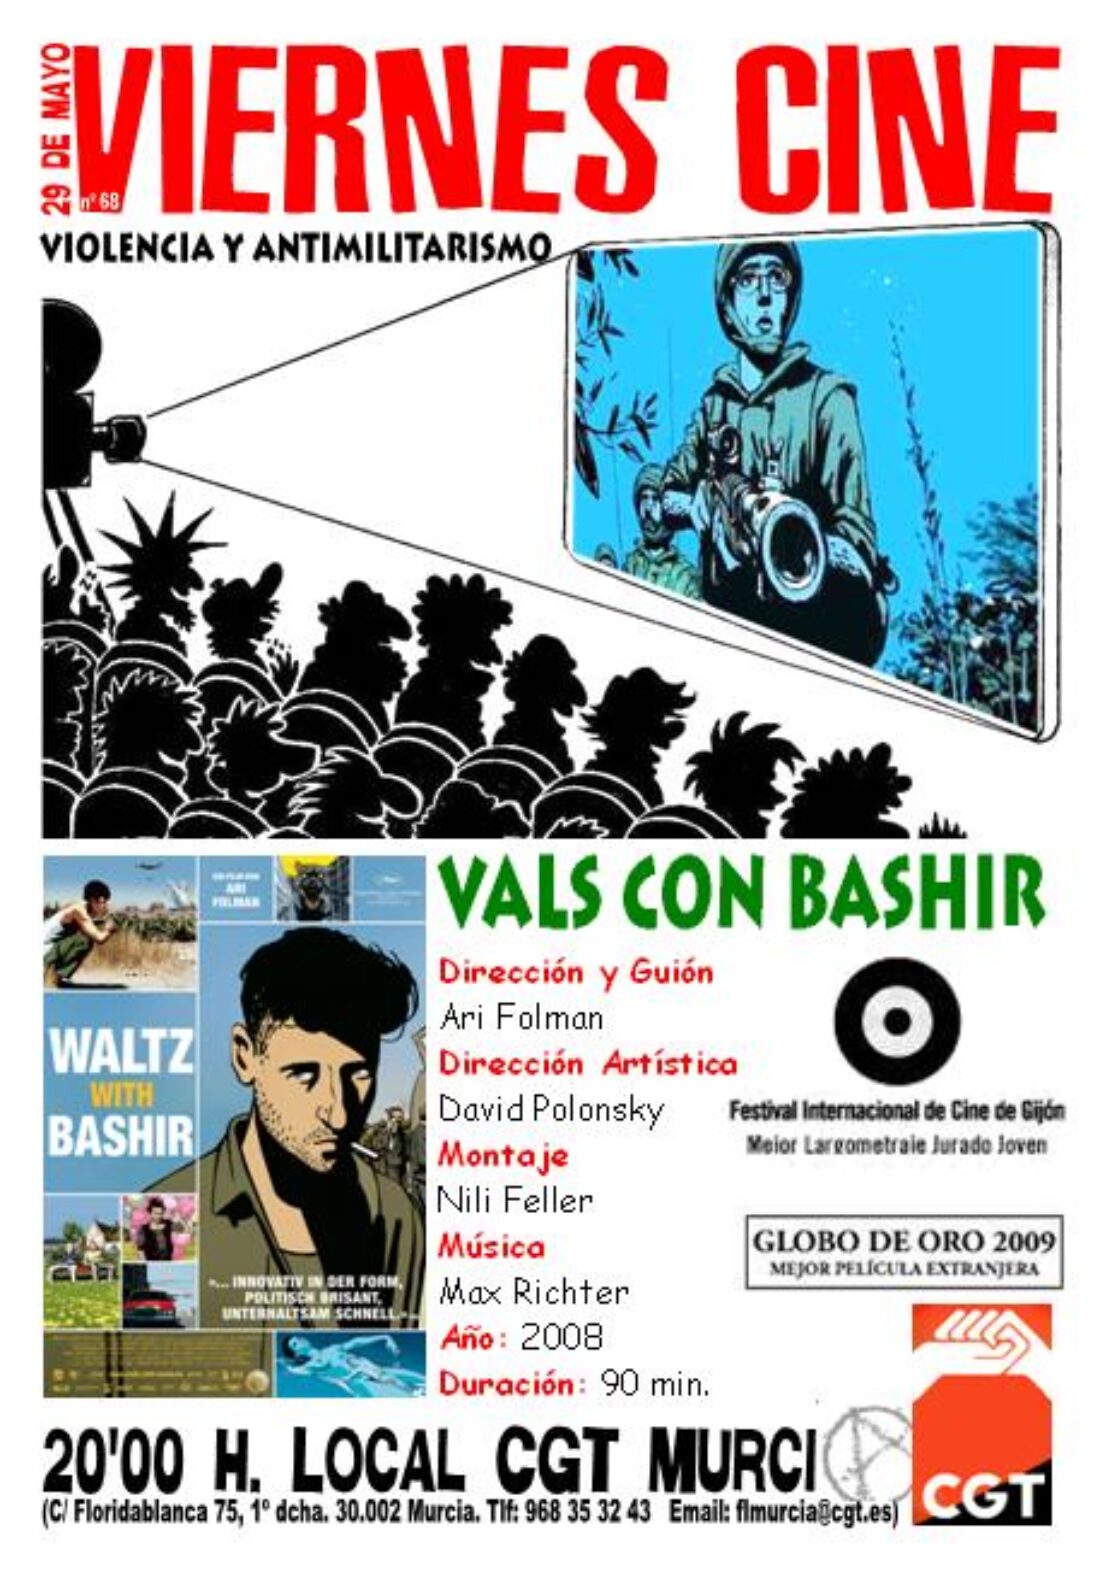 VIERNES CINE. El 29 de mayo VALS CON BASHIR a las 20’00 h. en el local de CGT en Murcia